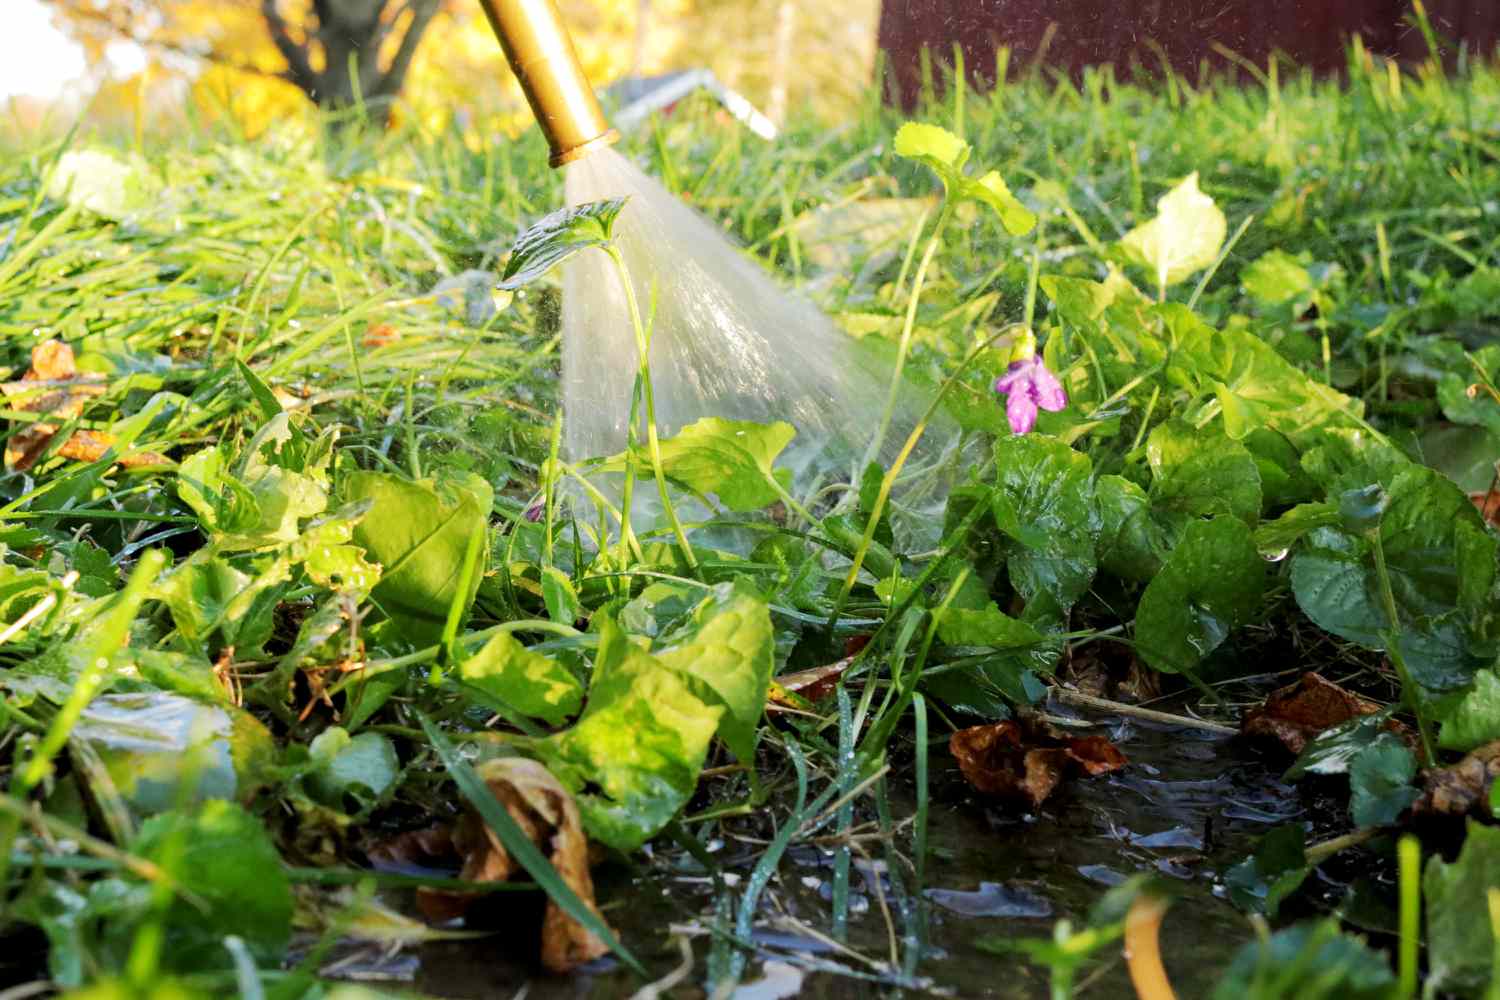 Gartenschlauch sprüht Wasser zum Befeuchten des Bereichs mit wilden Veilchen im Rasen